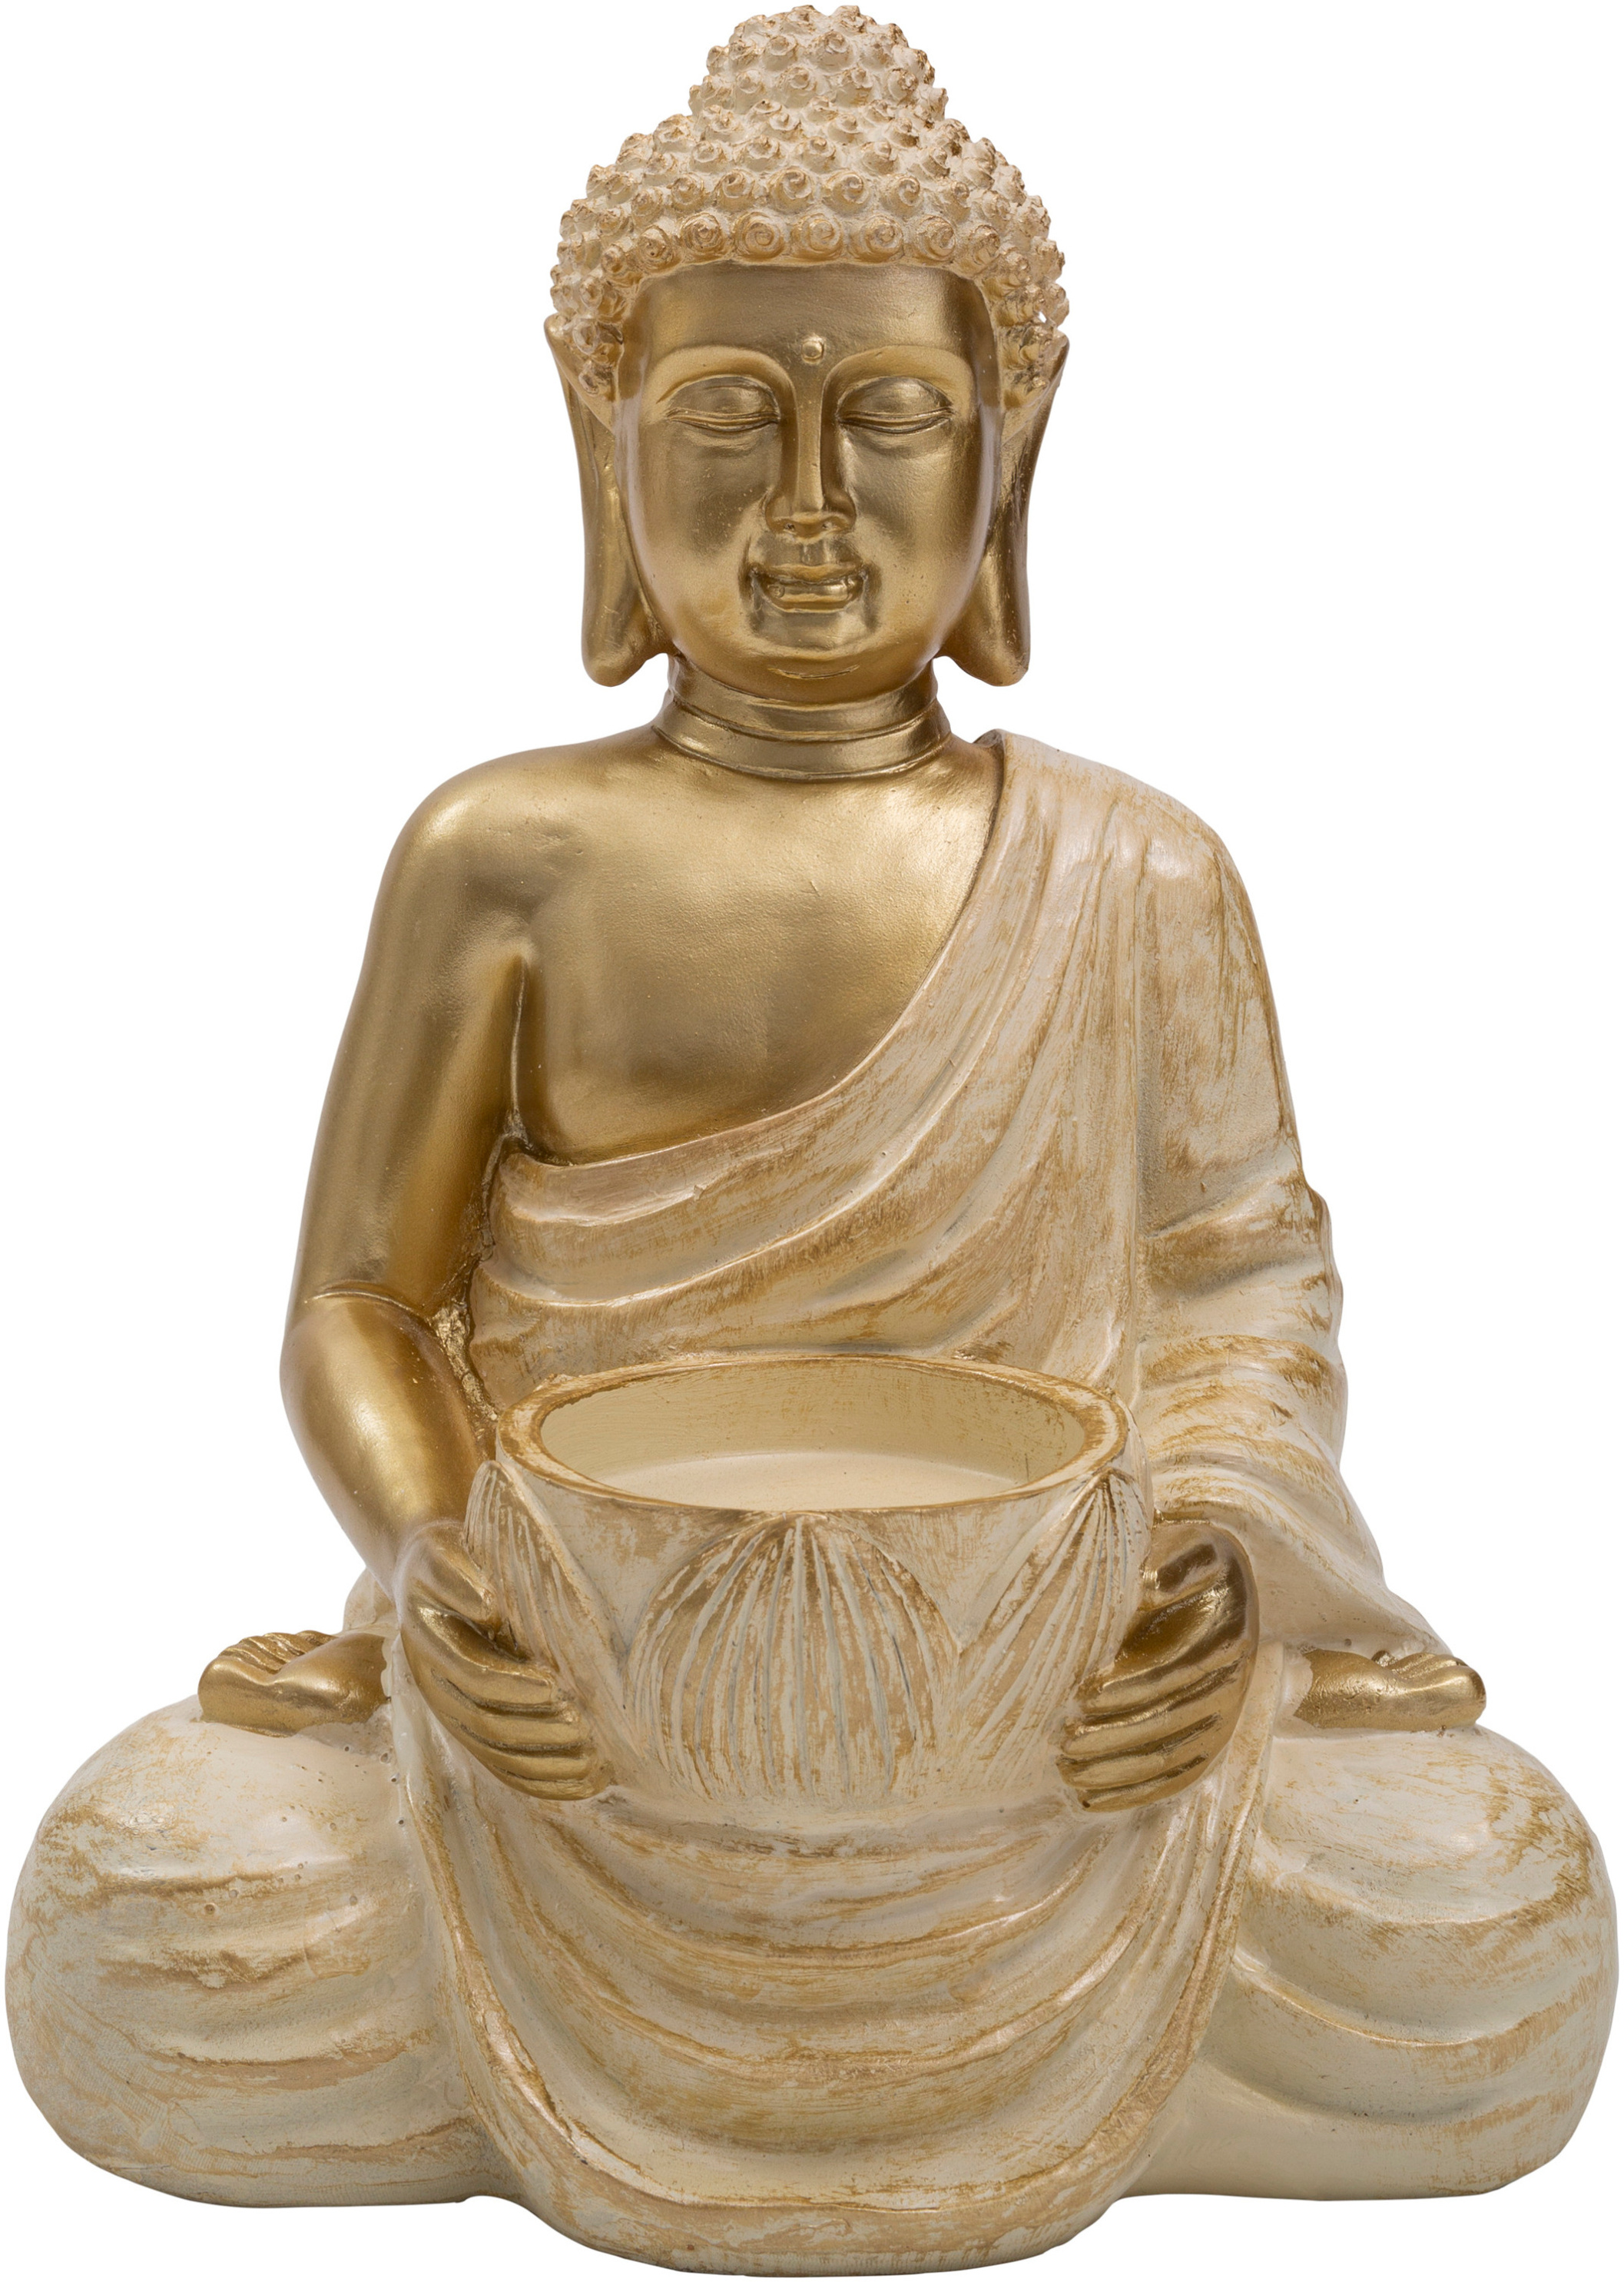 Dekofigur Buddha mit Kerzenhalter jetzt bei Weltbild.at bestellen